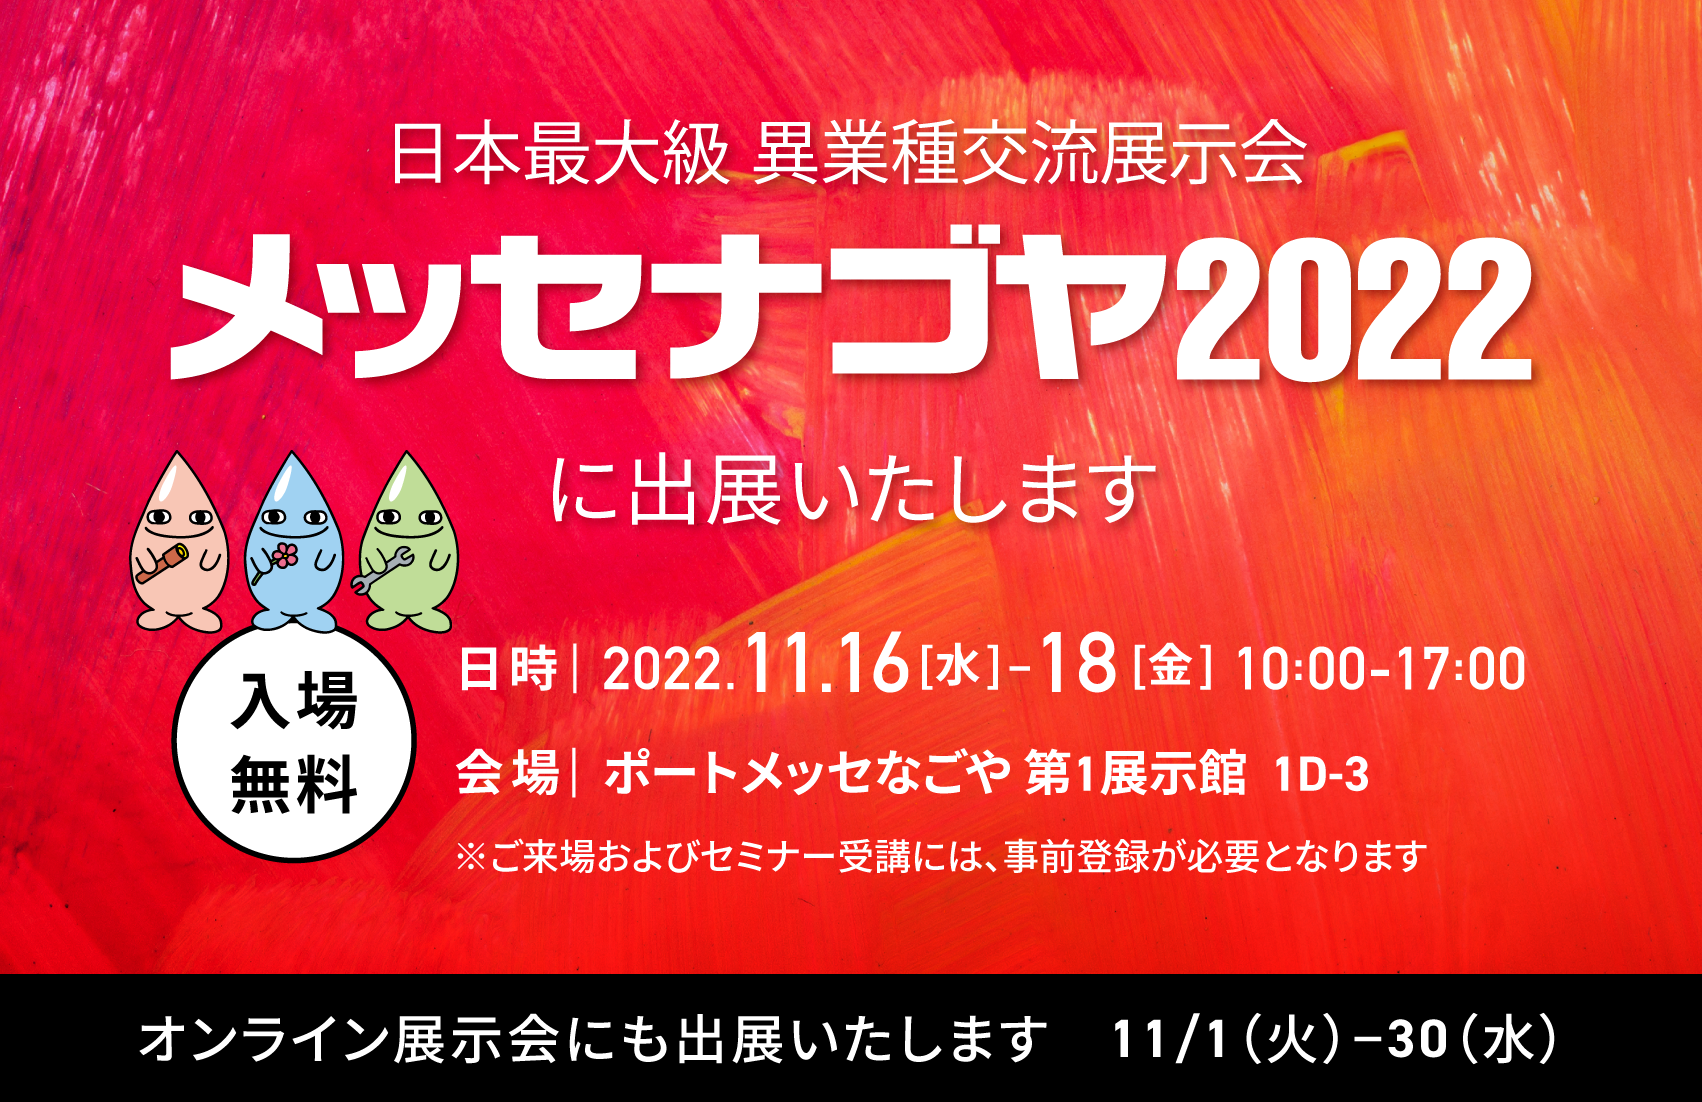 日本最大級異業種交流展示会「メッセナゴヤ2022」に、MONOZUKURI-X研究所として出展いたします